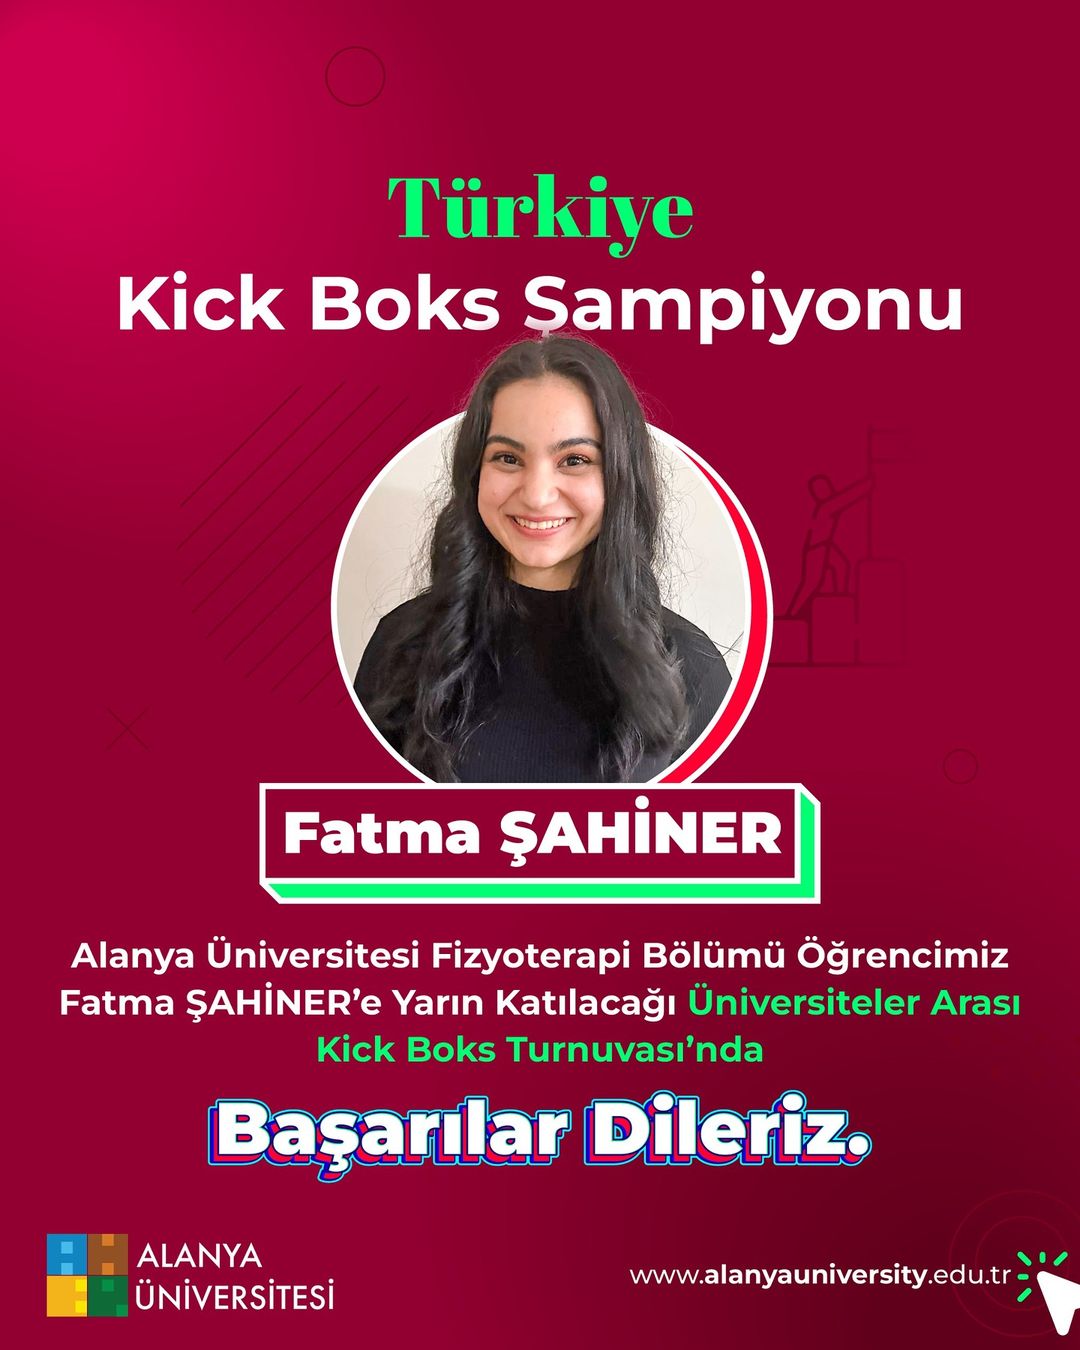 Alanya Üniversitesi Fizyoterapi Öğrencisi Fatma Şahiner, Üniversitelerarası Kick Boks Turnuvası'na hazırlanıyor!